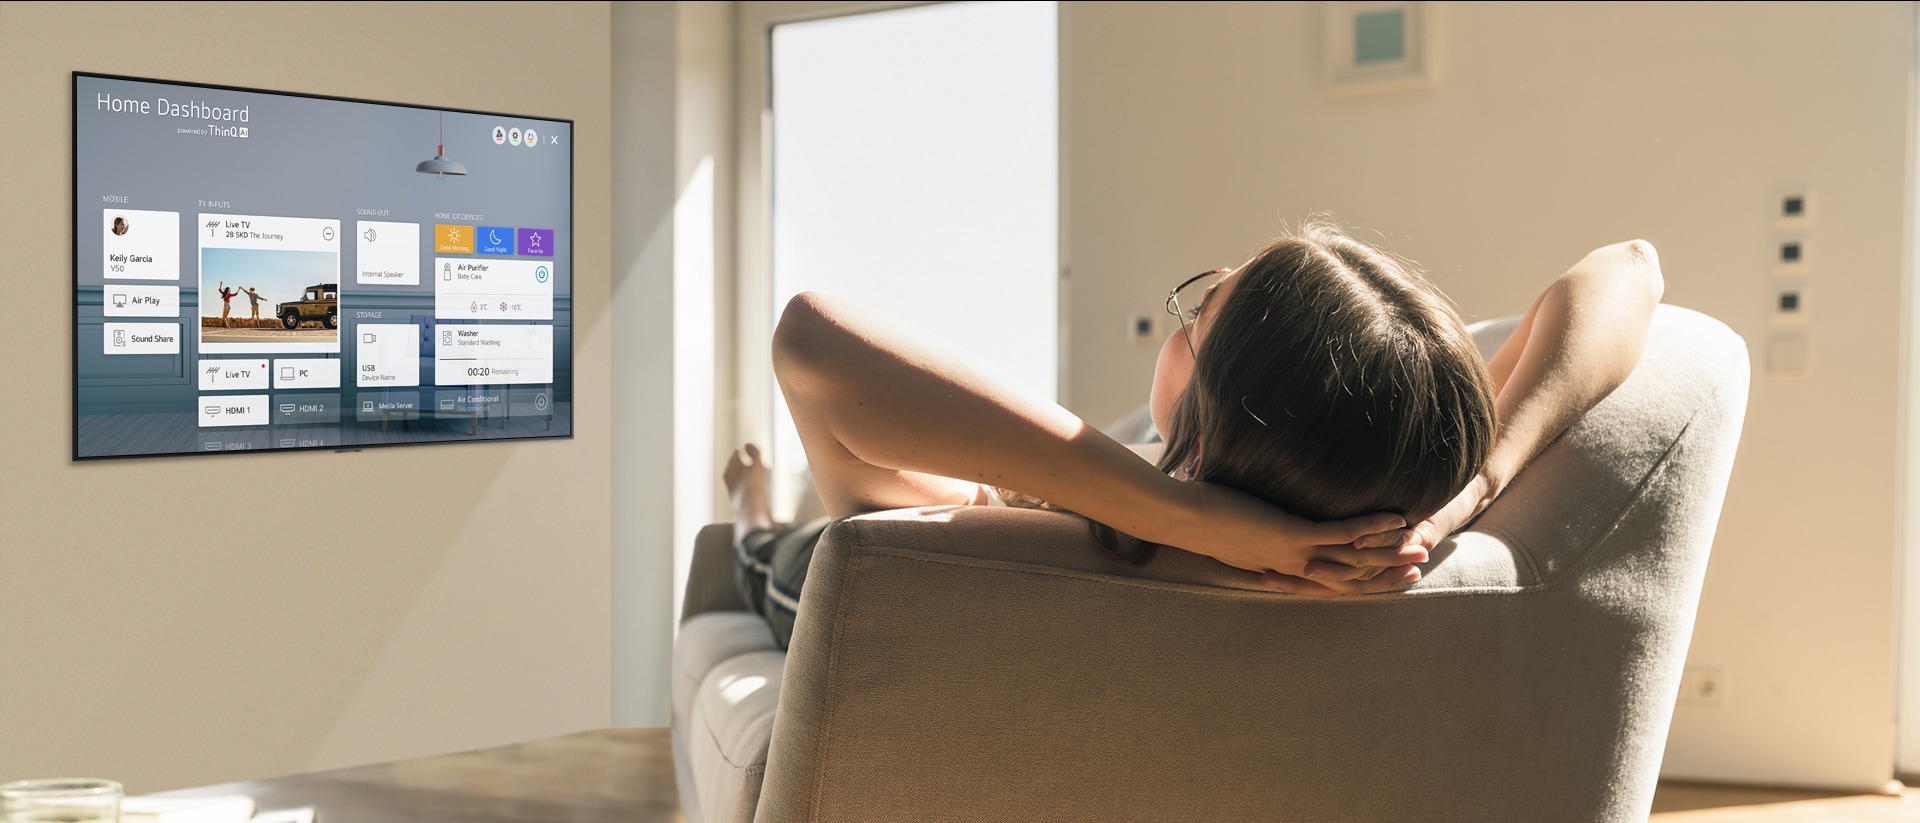 Mujer recostada en un sofá diciéndole a la TV que baje la temperatura con el Panel de inicio en la pantalla de la TV